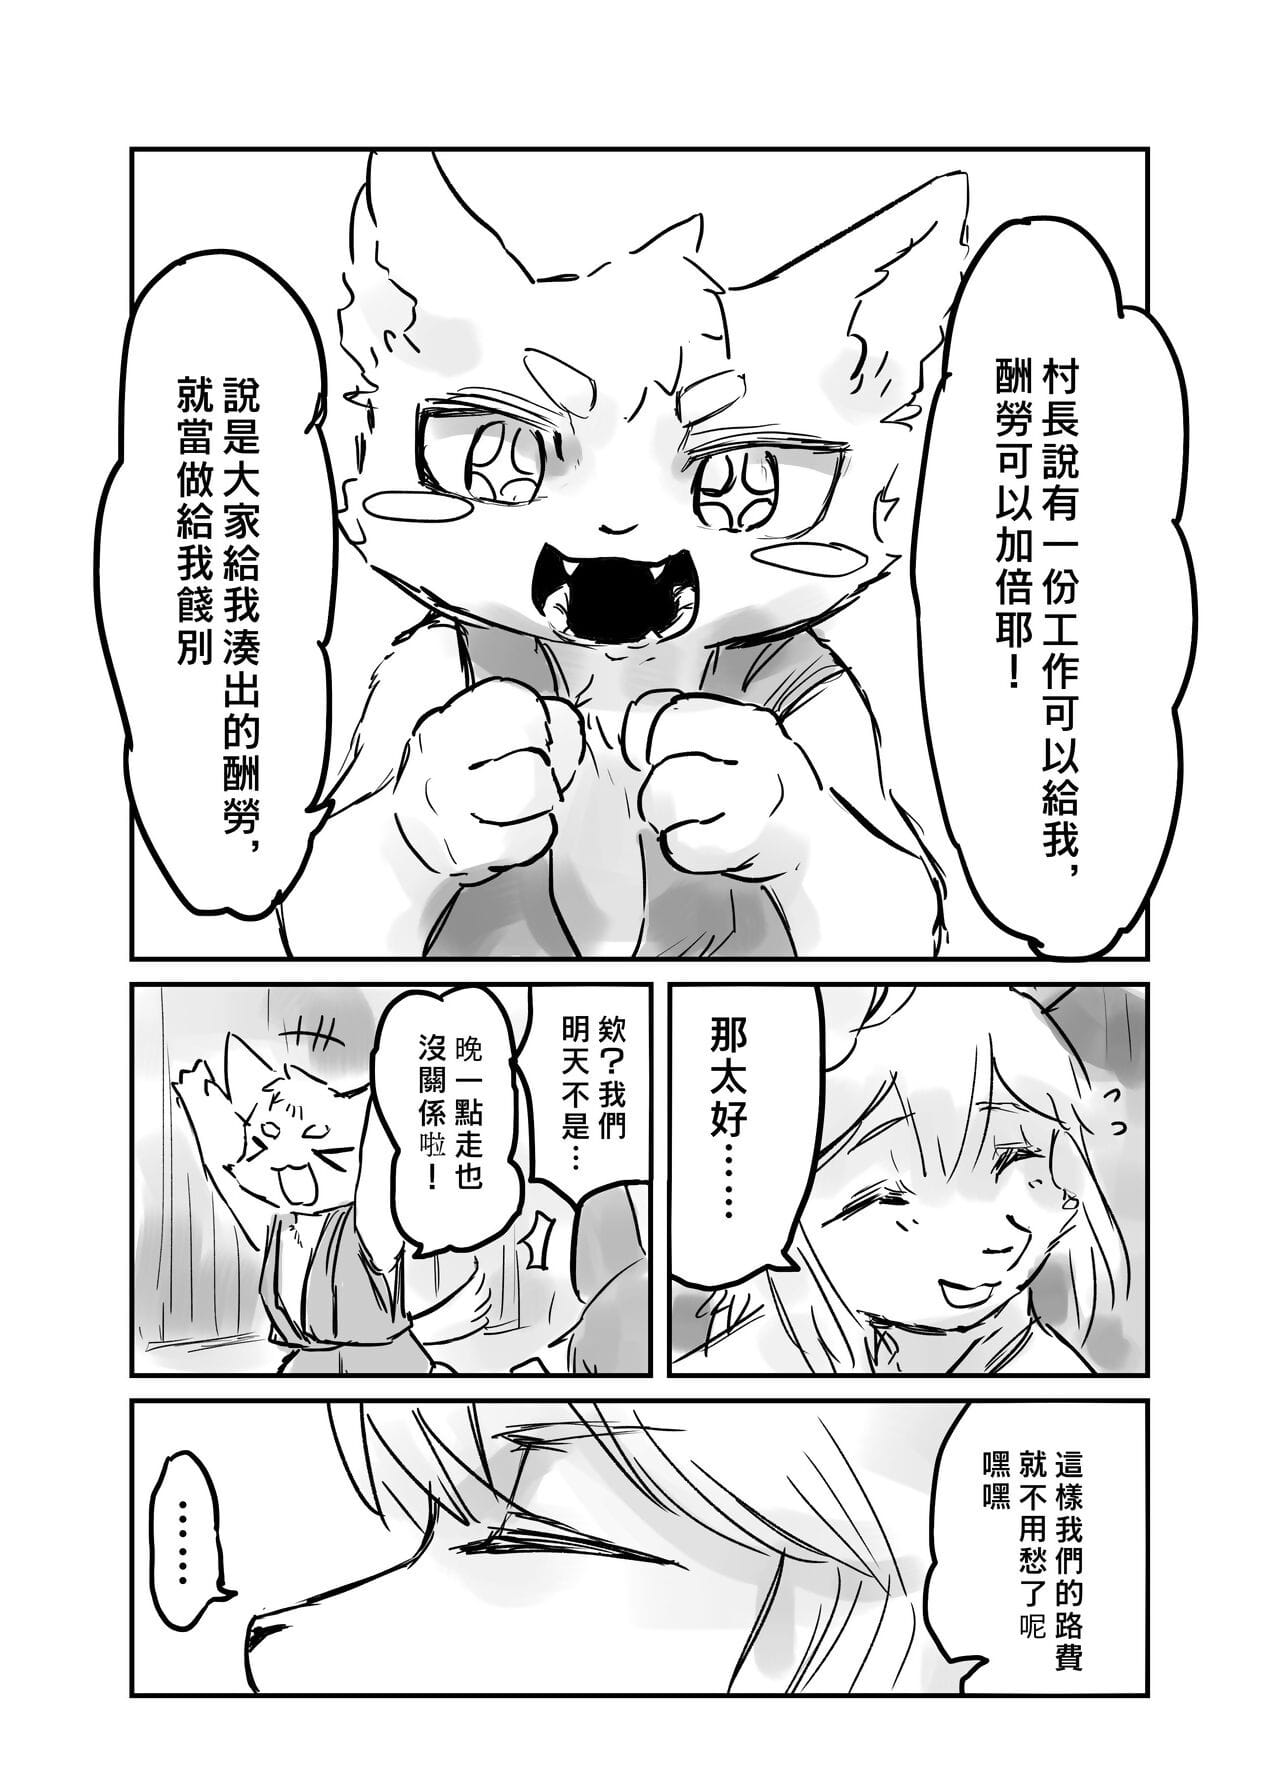 （the gość 他乡之人 by：鬼流 część 2 page 1